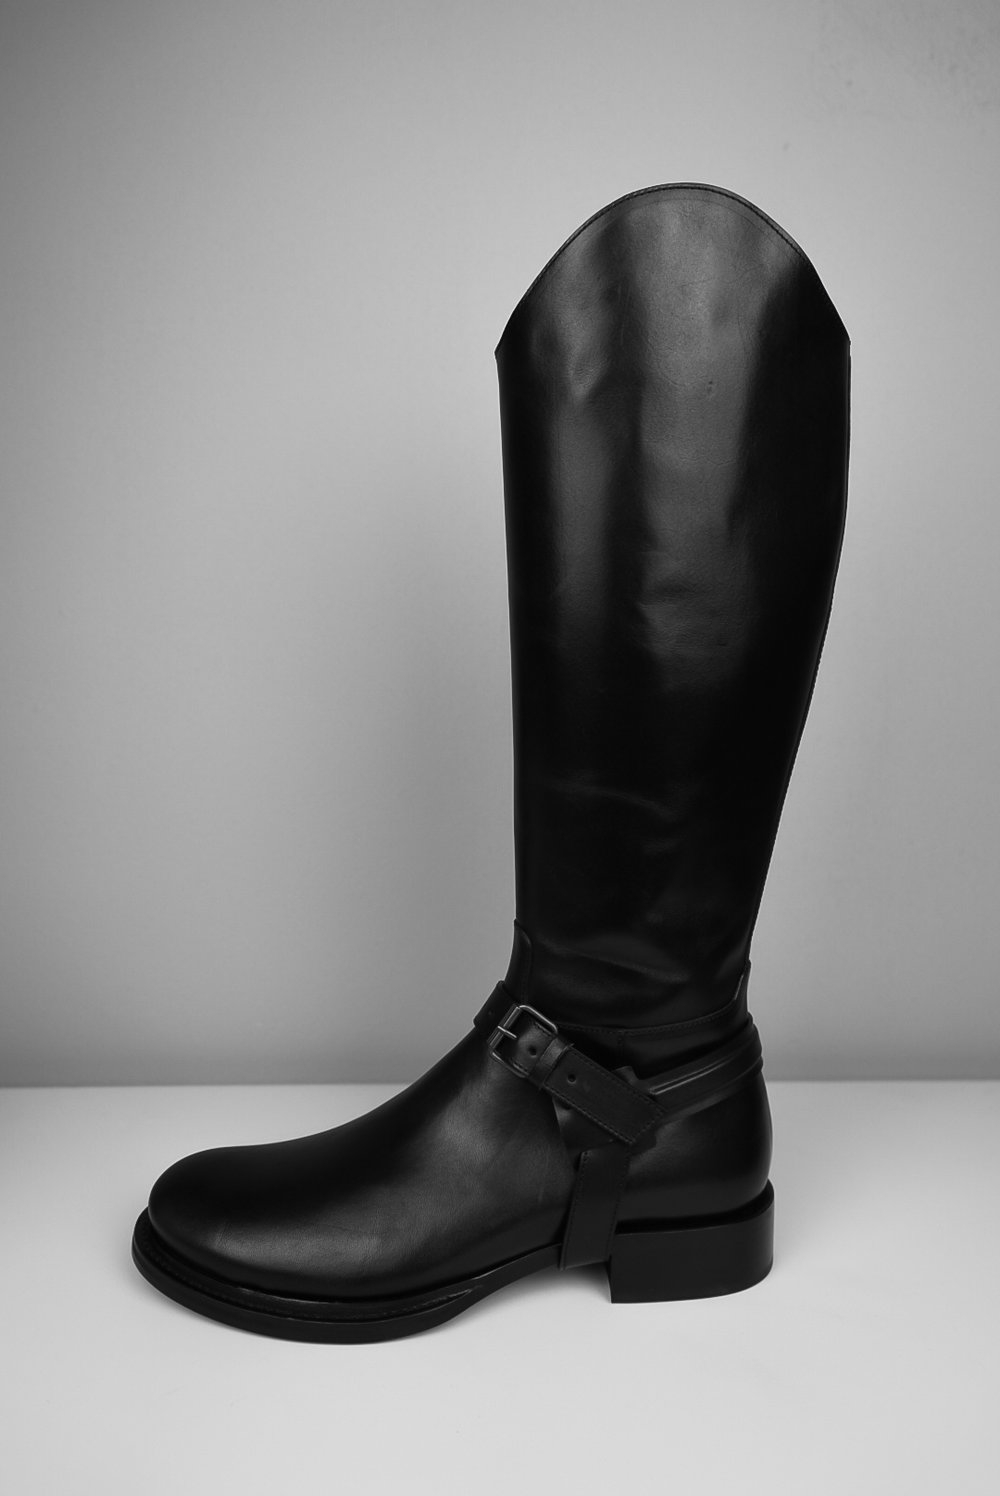 Ann Demeulemeester – Mens – High Boots – Black – Leather – Side Zipper Closing